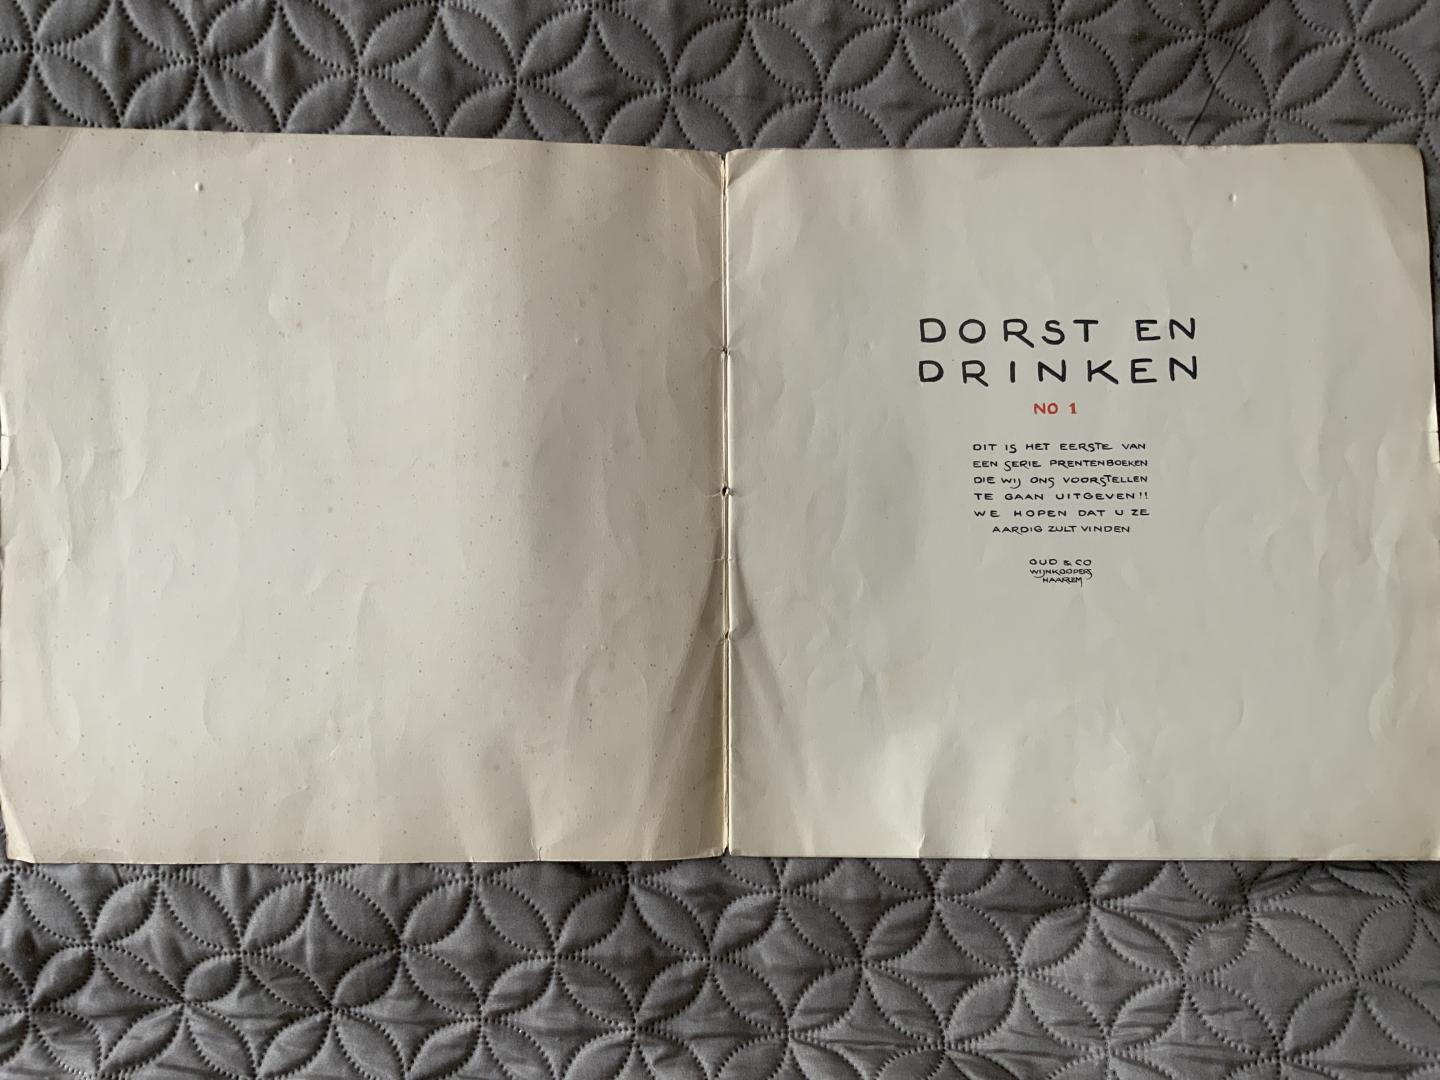 Jo Spier (tekenaar 1900-1978) en firma’s Hoekstra ism. Oud & Co (intro) - Dorst En Drinken, no 1 van serie prentenboeken